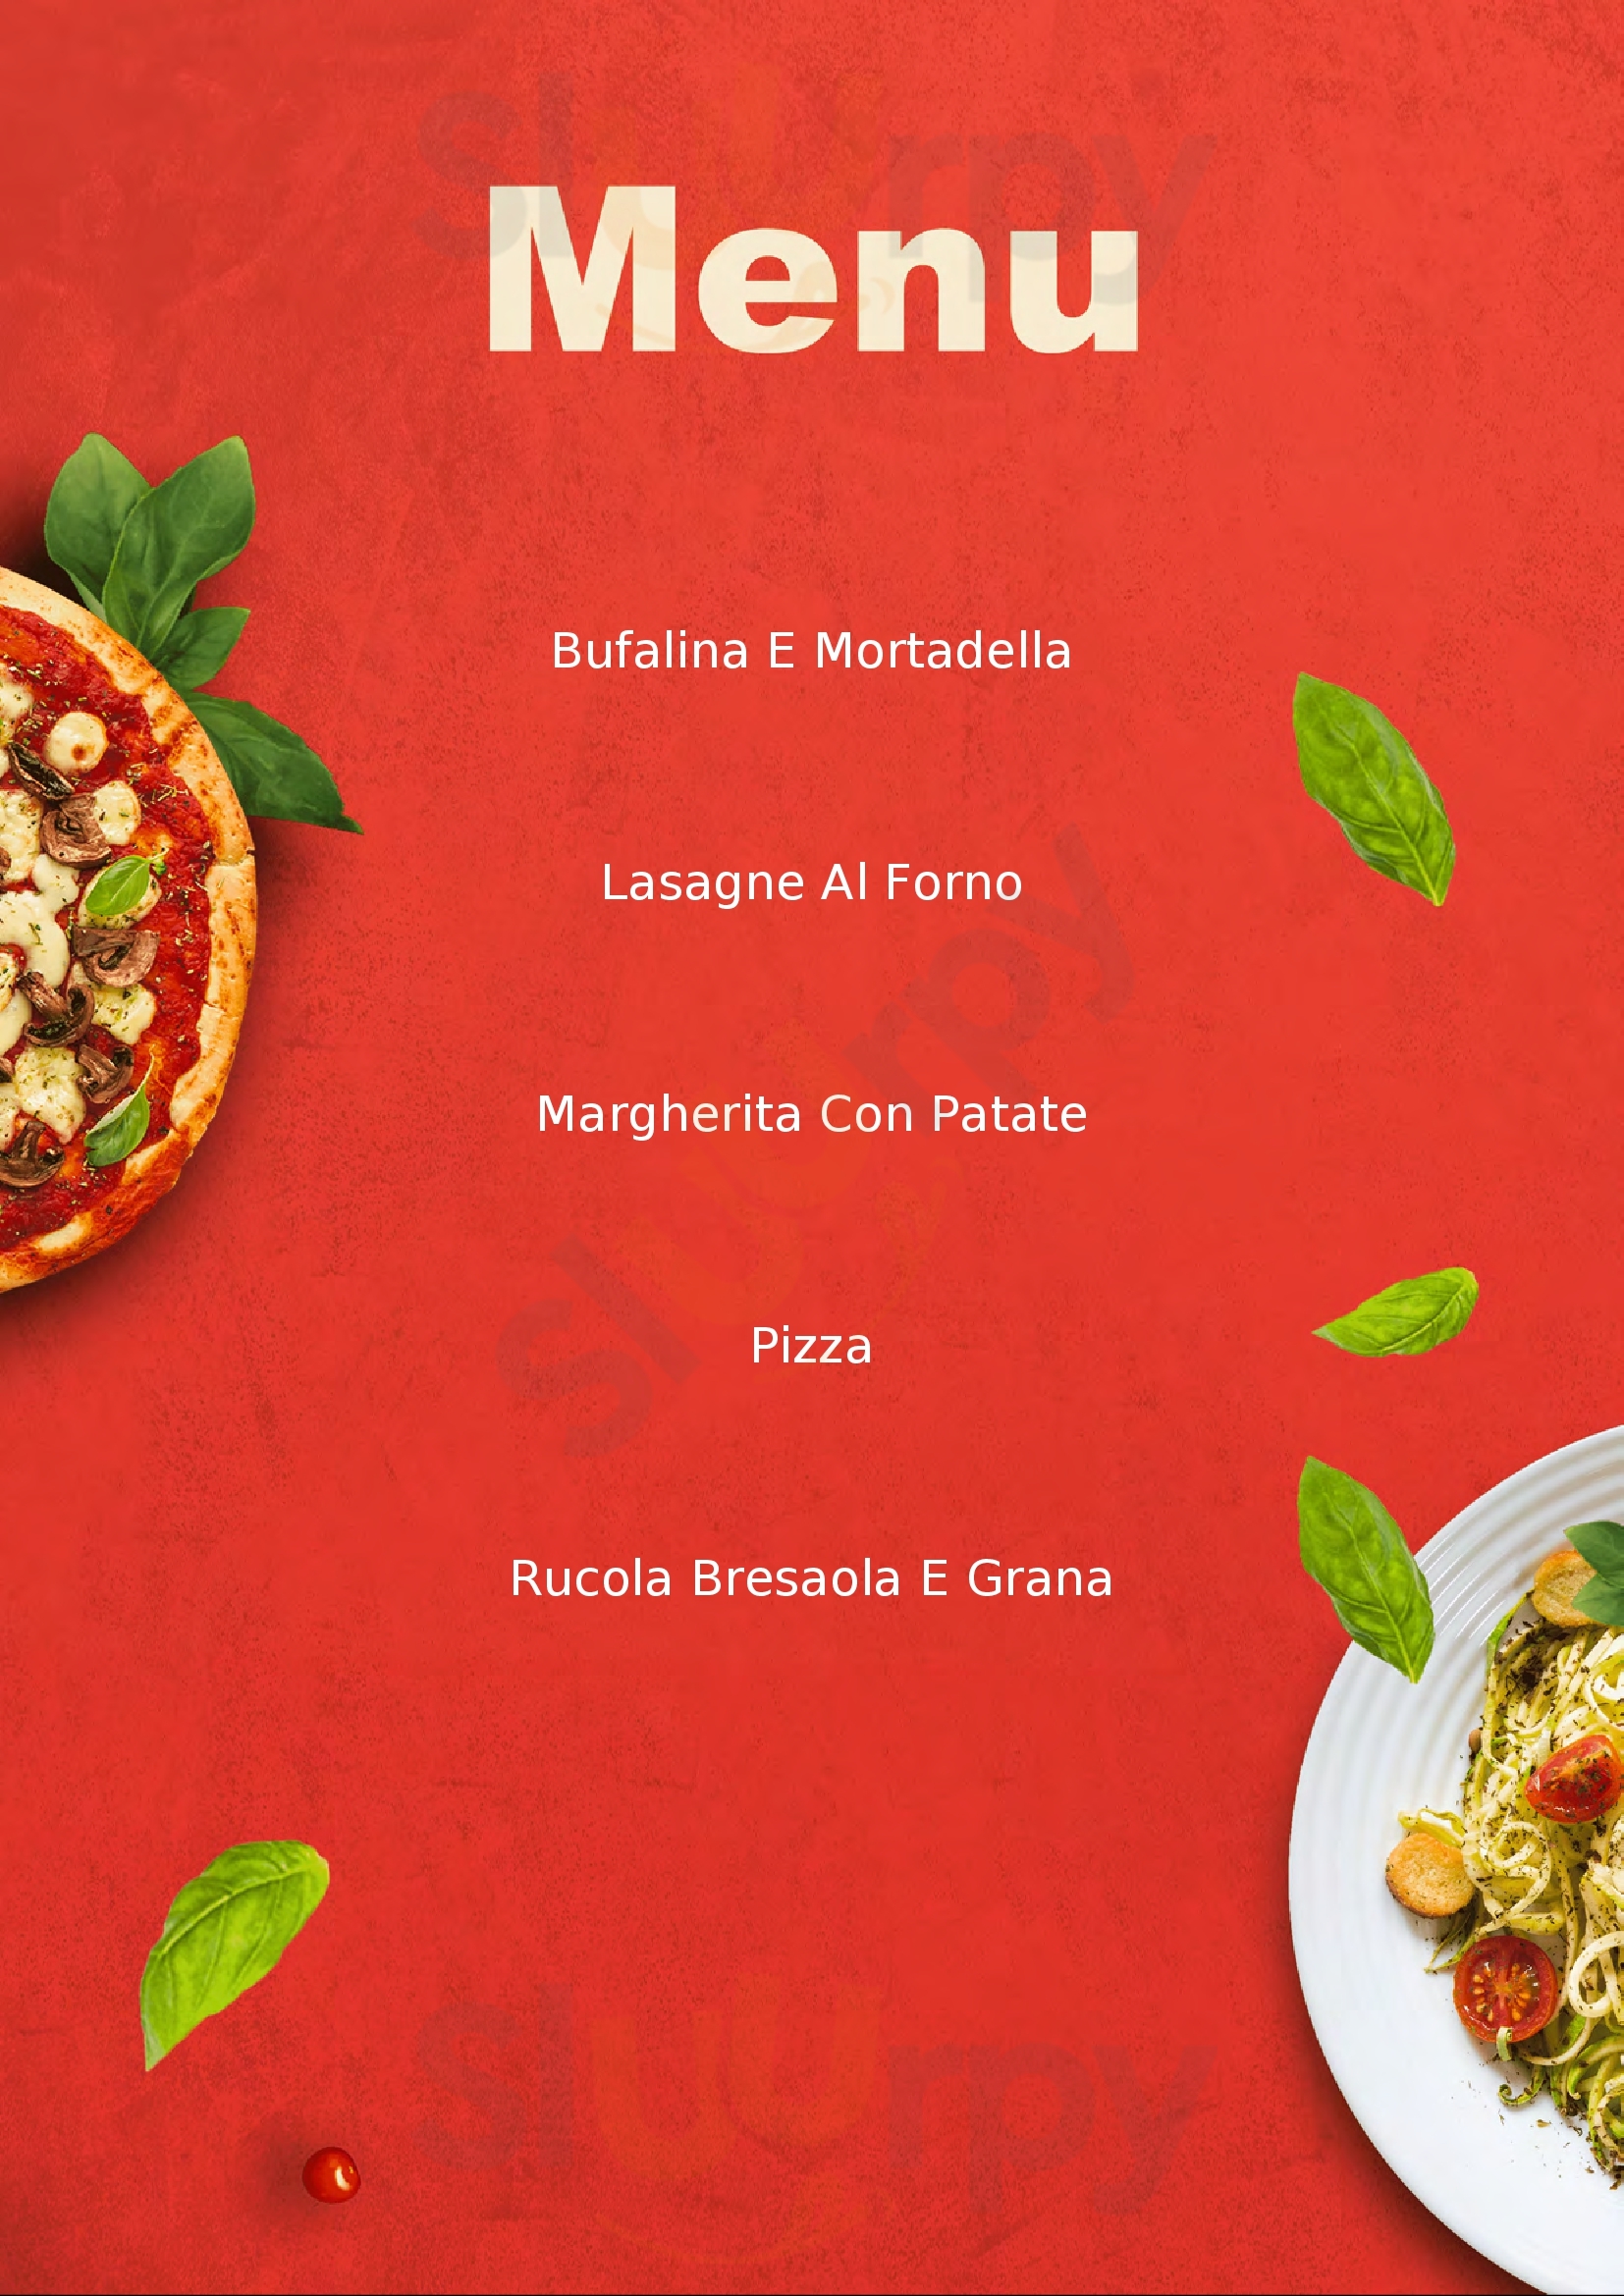 Pizzeria Picchio Rosso Maranello menù 1 pagina